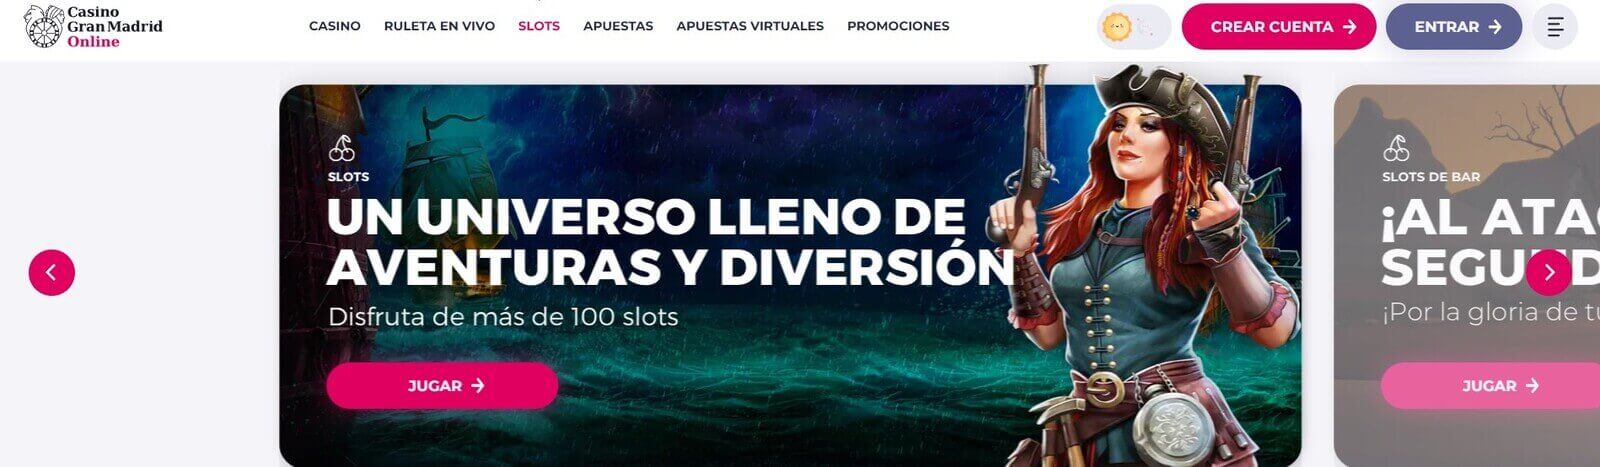 Página web de Casino Gran Madrid